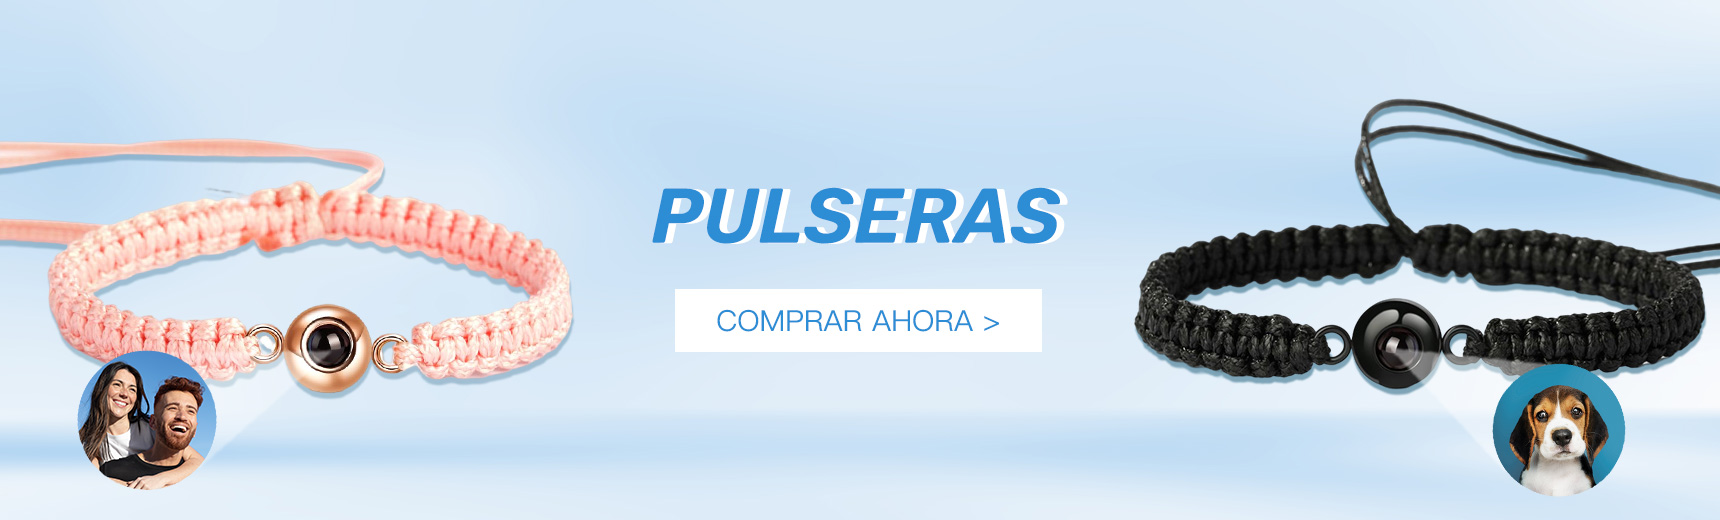 PULSERAS